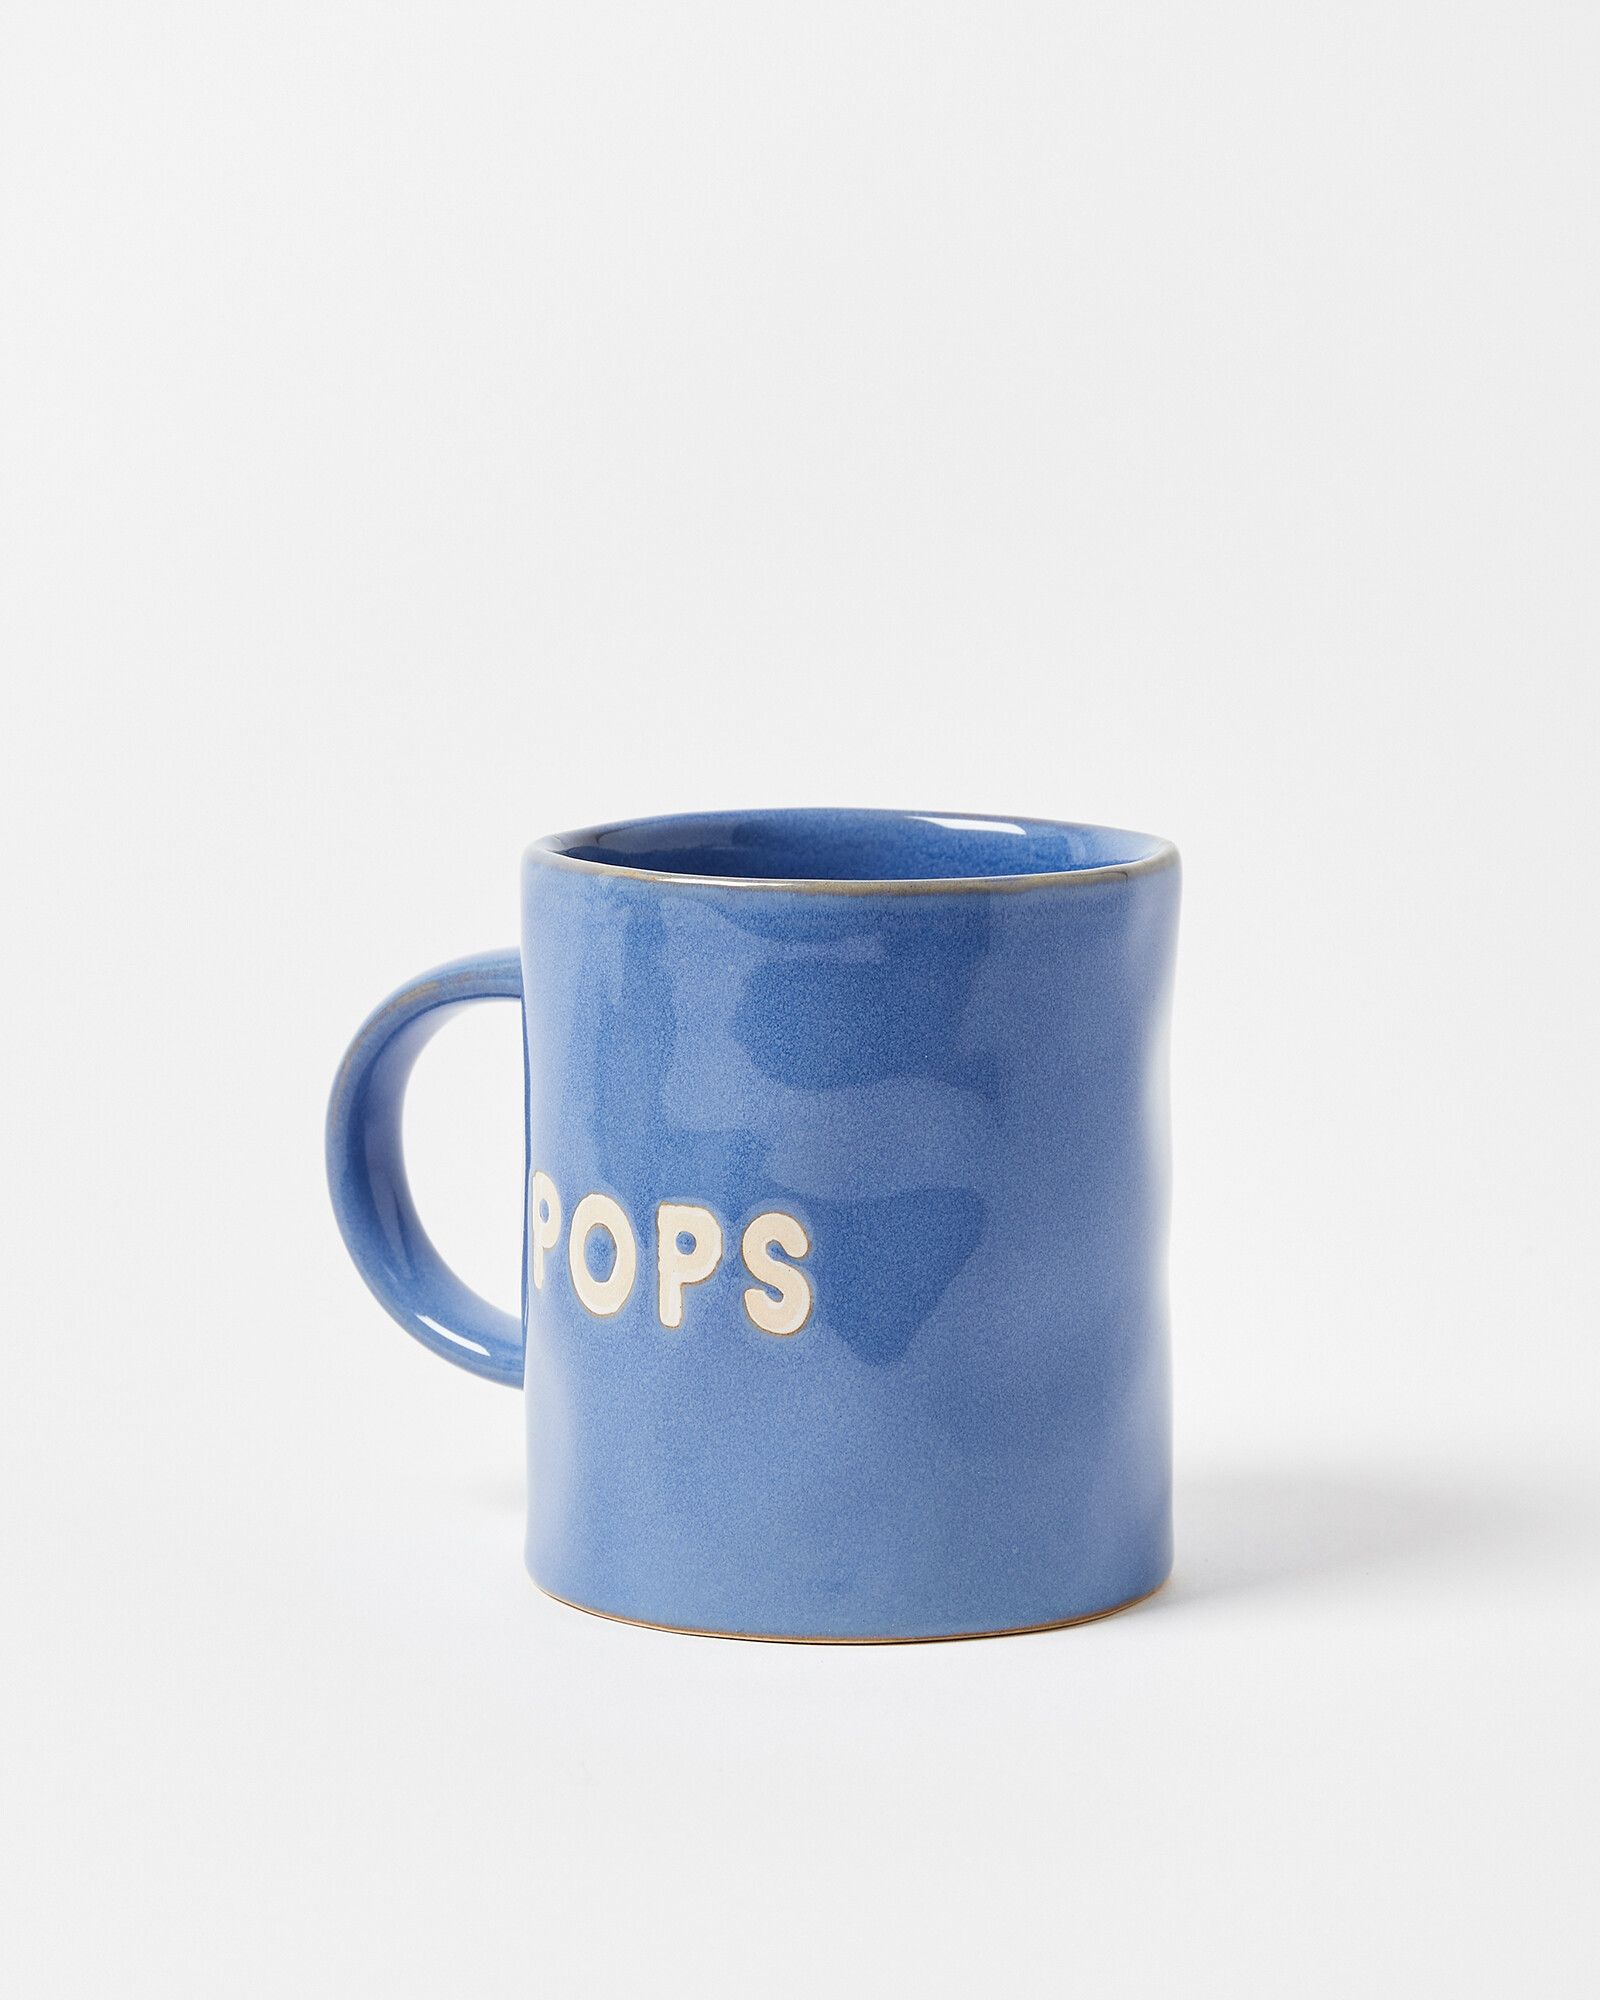 Pops Blue Ceramic Mug | Oliver Bonas